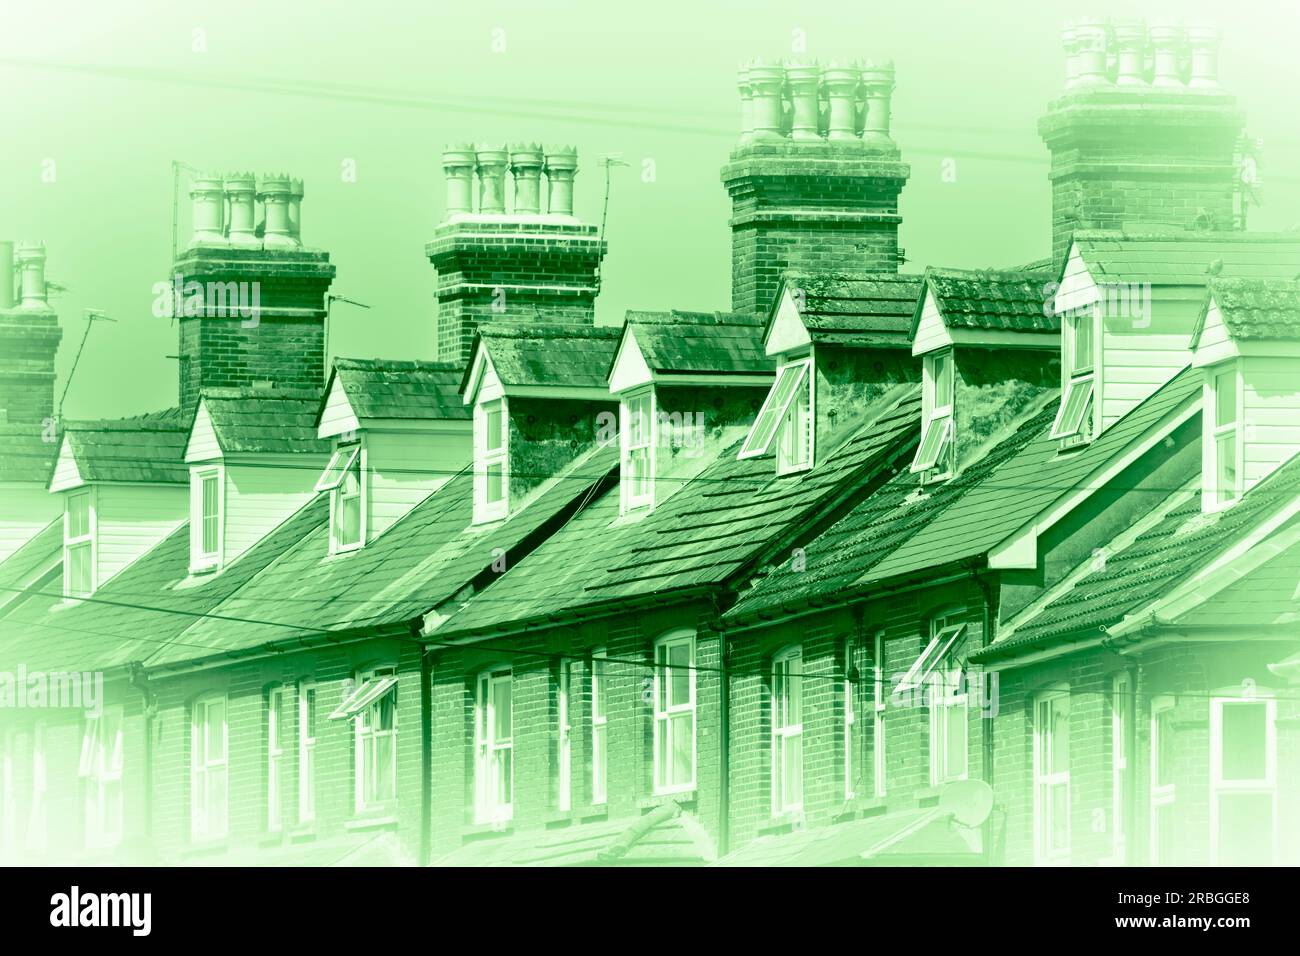 Image de fond vert montrant des maisons mitoyennes victoriennes à Basingstoke, Royaume-Uni. Concept : maisons vertes, énergies renouvelables, maisons isolantes, epc Banque D'Images